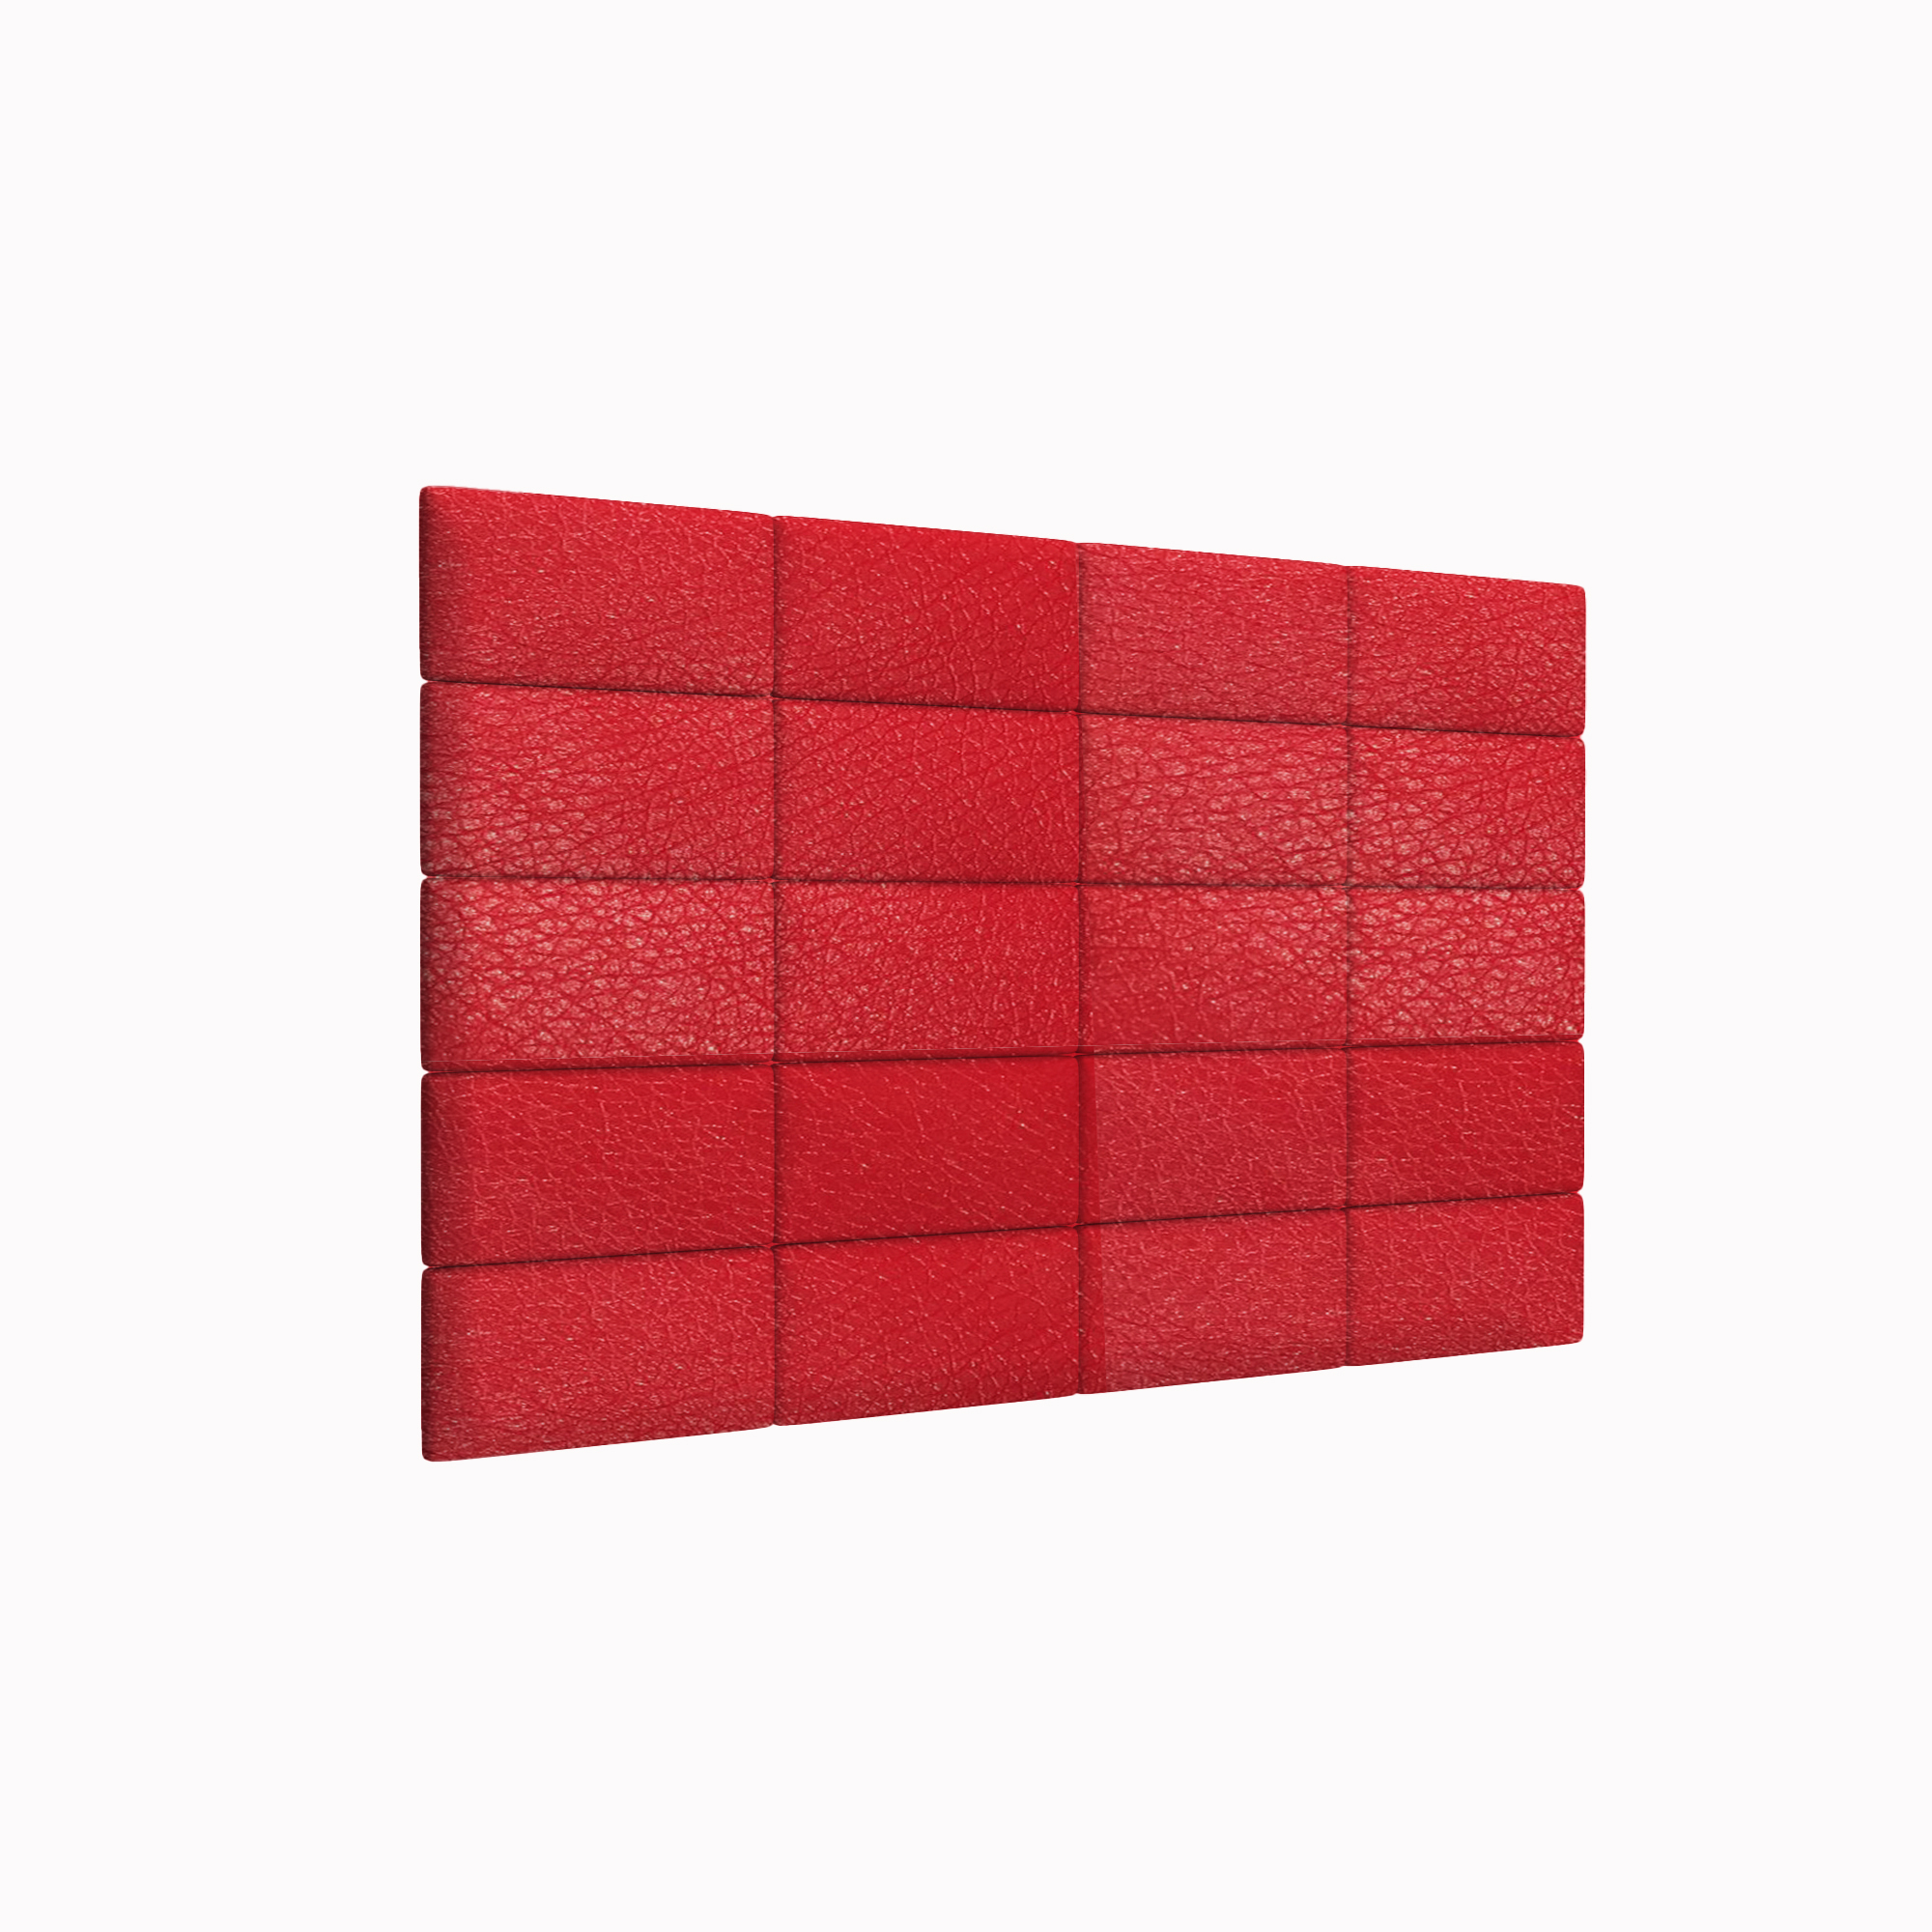 Мягкие обои Eco Leather Red 15х30 см 4 шт.